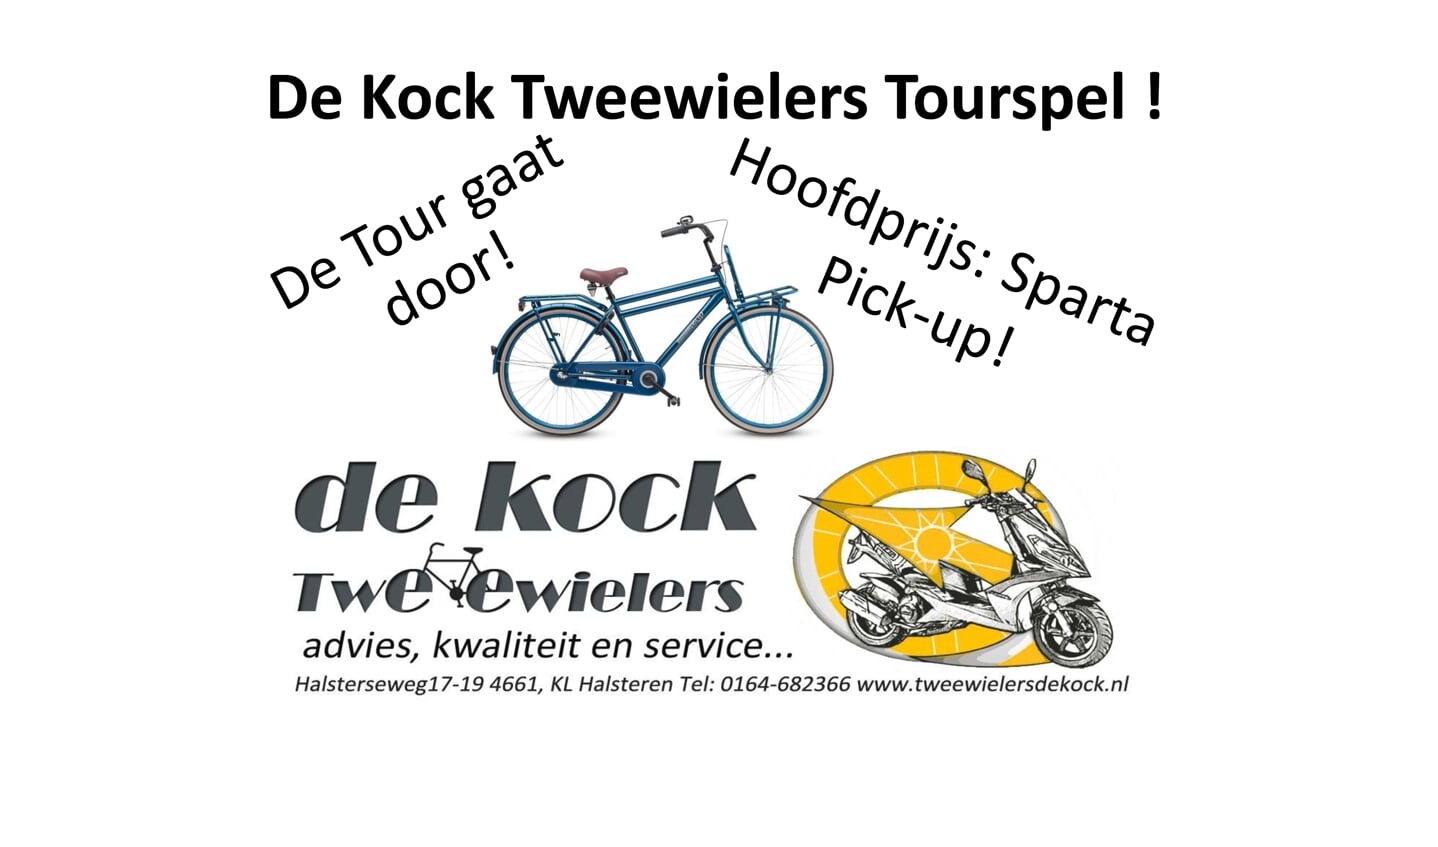 De Kock Tweewielers Tourspel